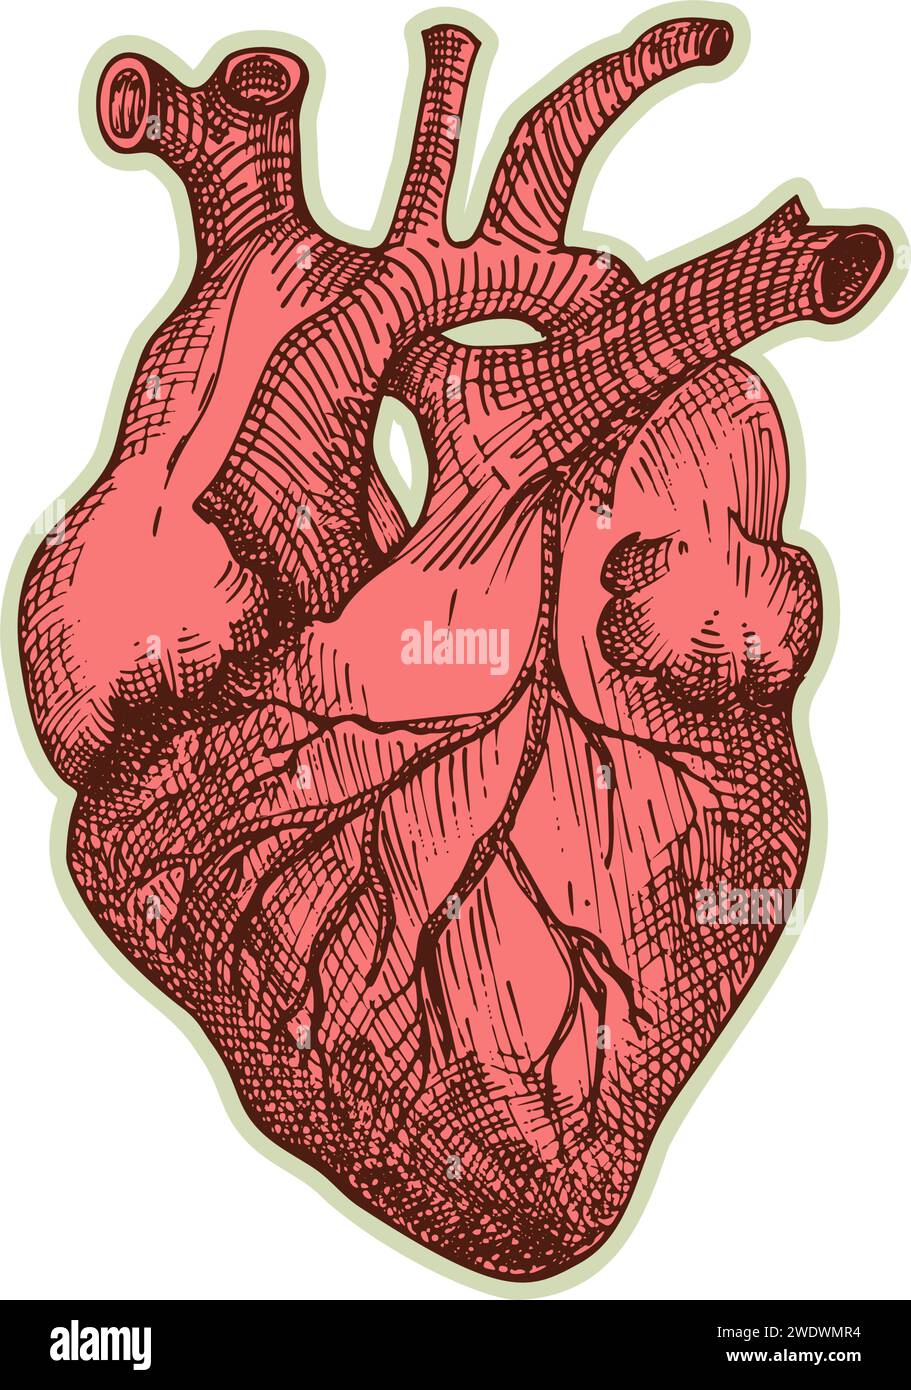 Autocollant de coeur humain. Vintage anatomie gravure organe esquisse isolé sur fond blanc. Bonne idée pour la conception rétro de l'affiche de médecine à la main dessinée Illustration de Vecteur